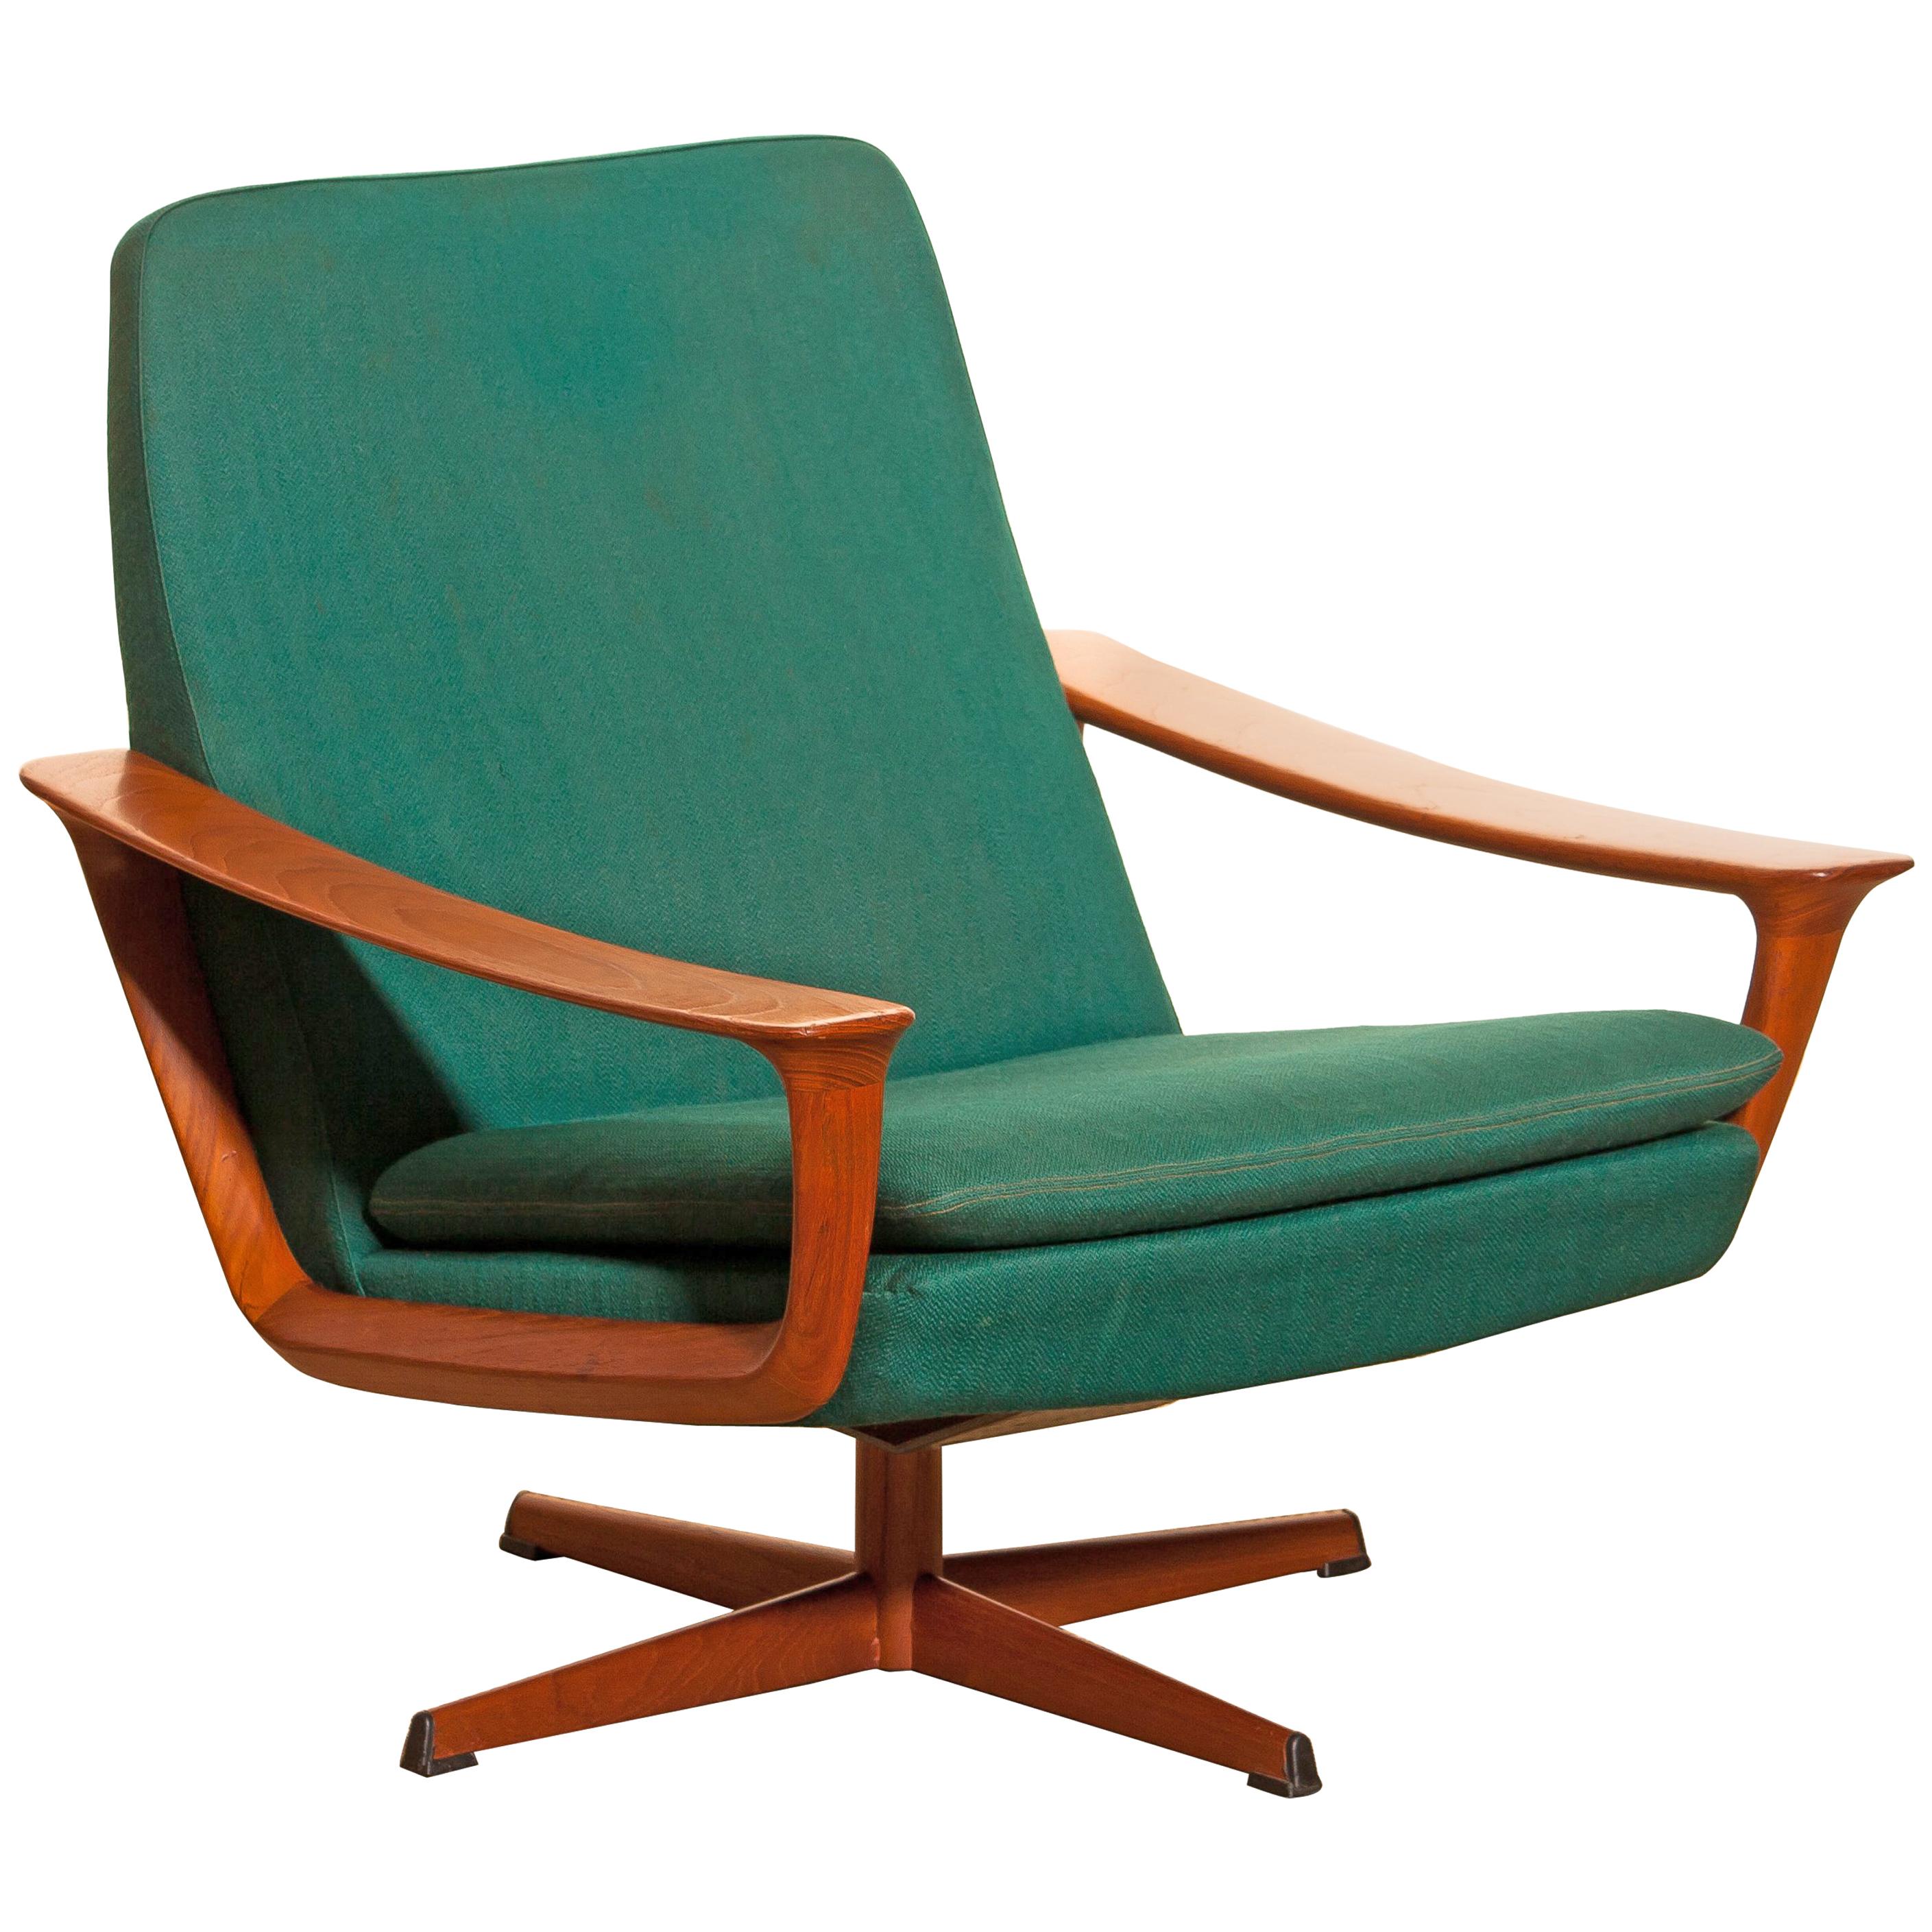 1960s, Teak Swivel Chair by Johannes Andersen for Trensum Denmark